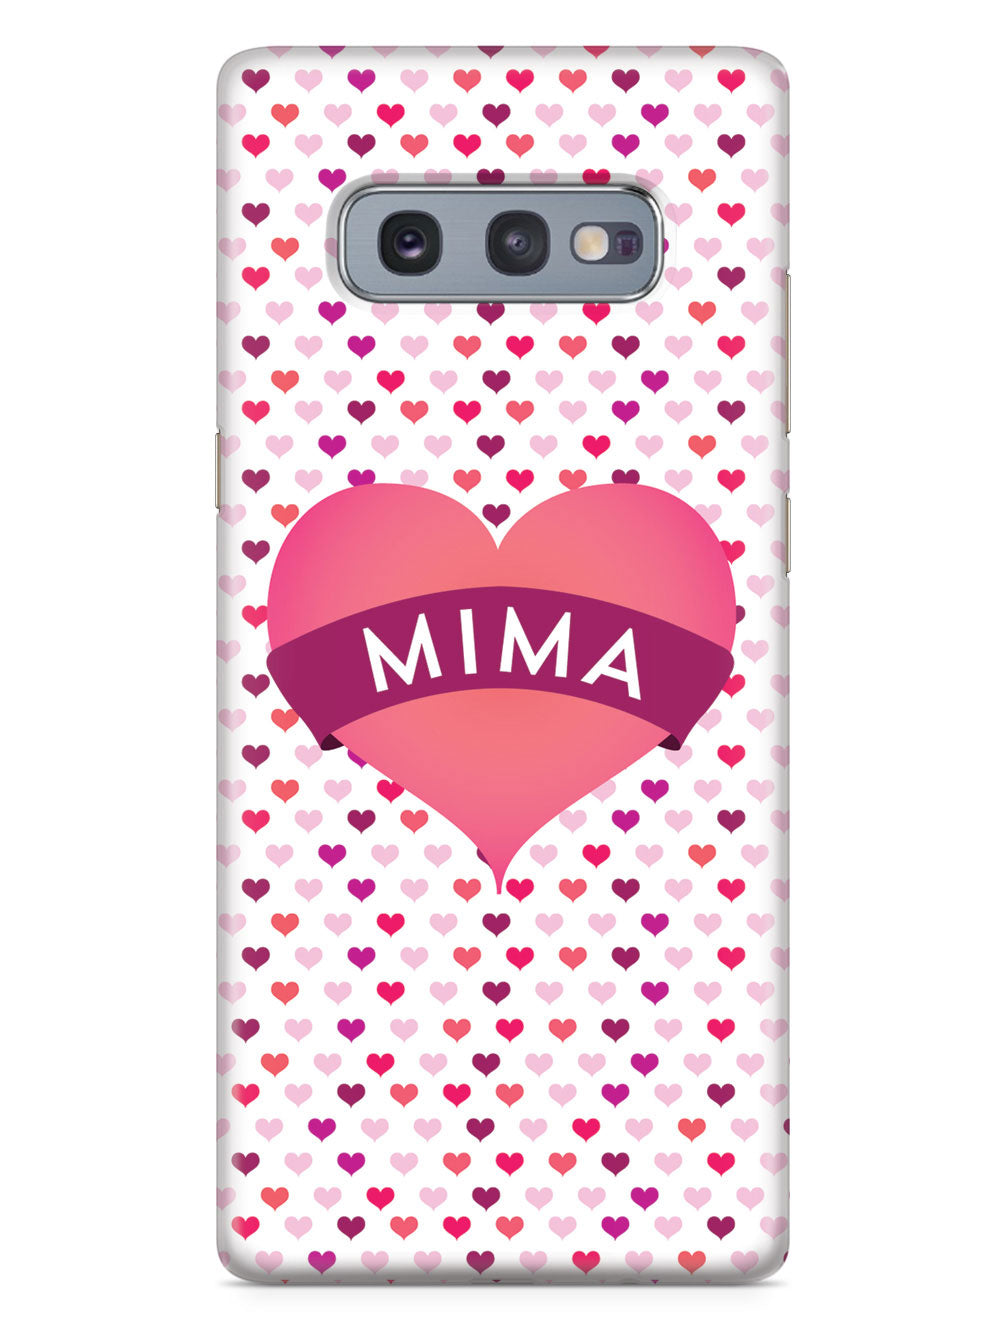 Mima Heart for Grandma Case